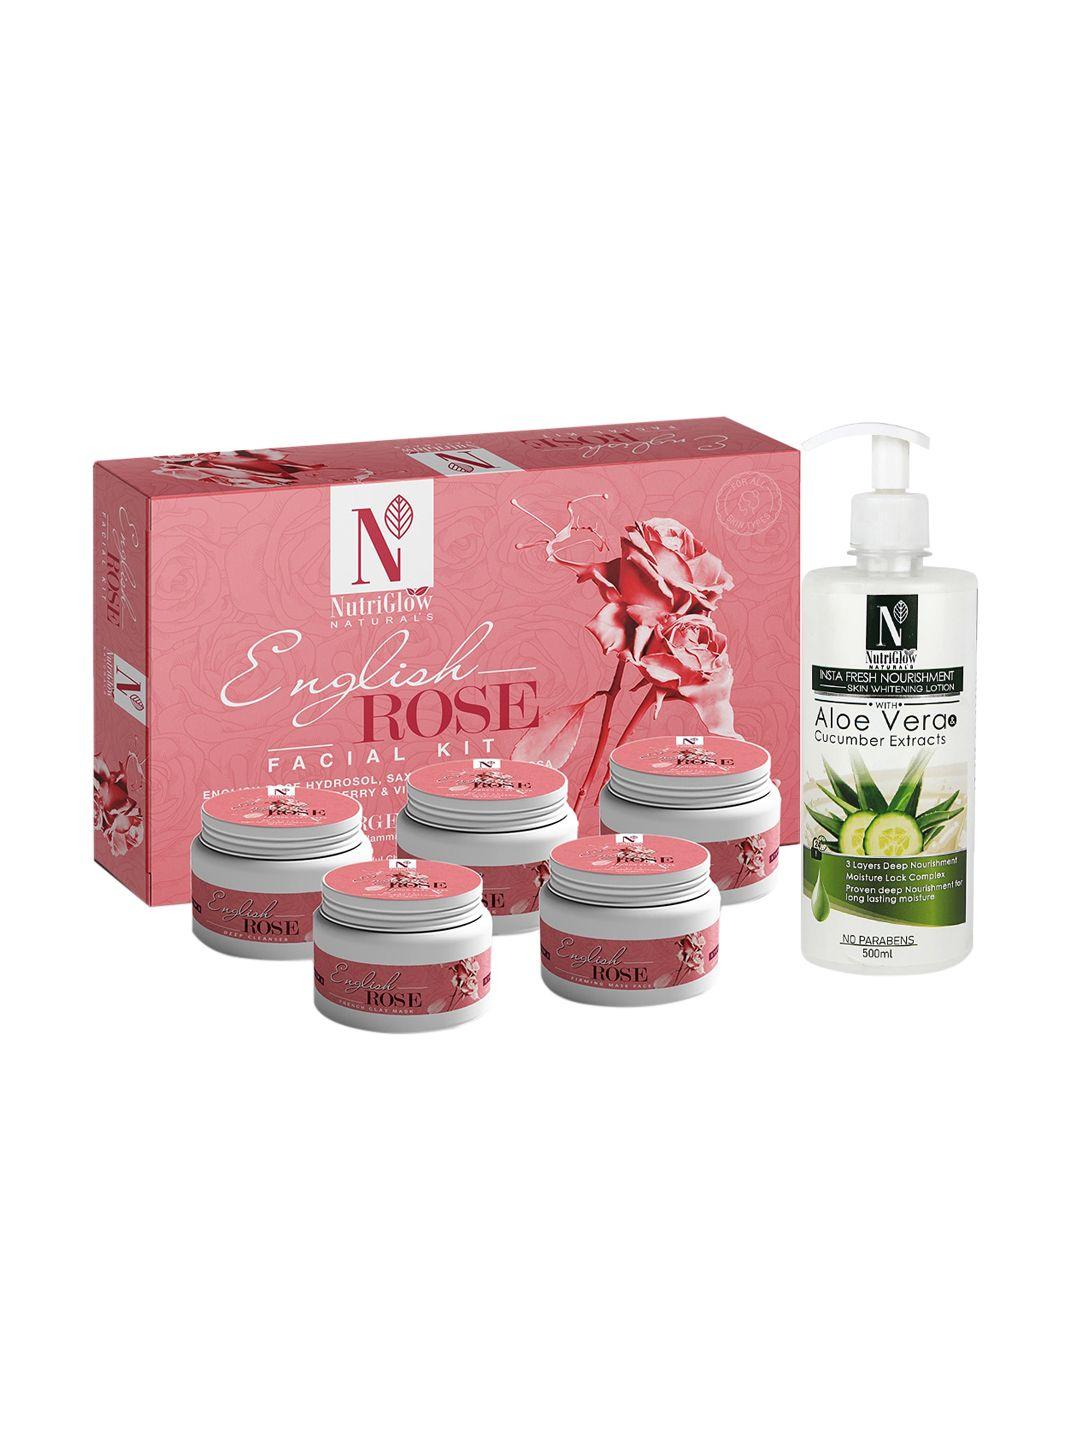 nutriglow-naturals-english-rose-facial-kit-250g+10ml-&-skin-whitening-body-lotion-500ml